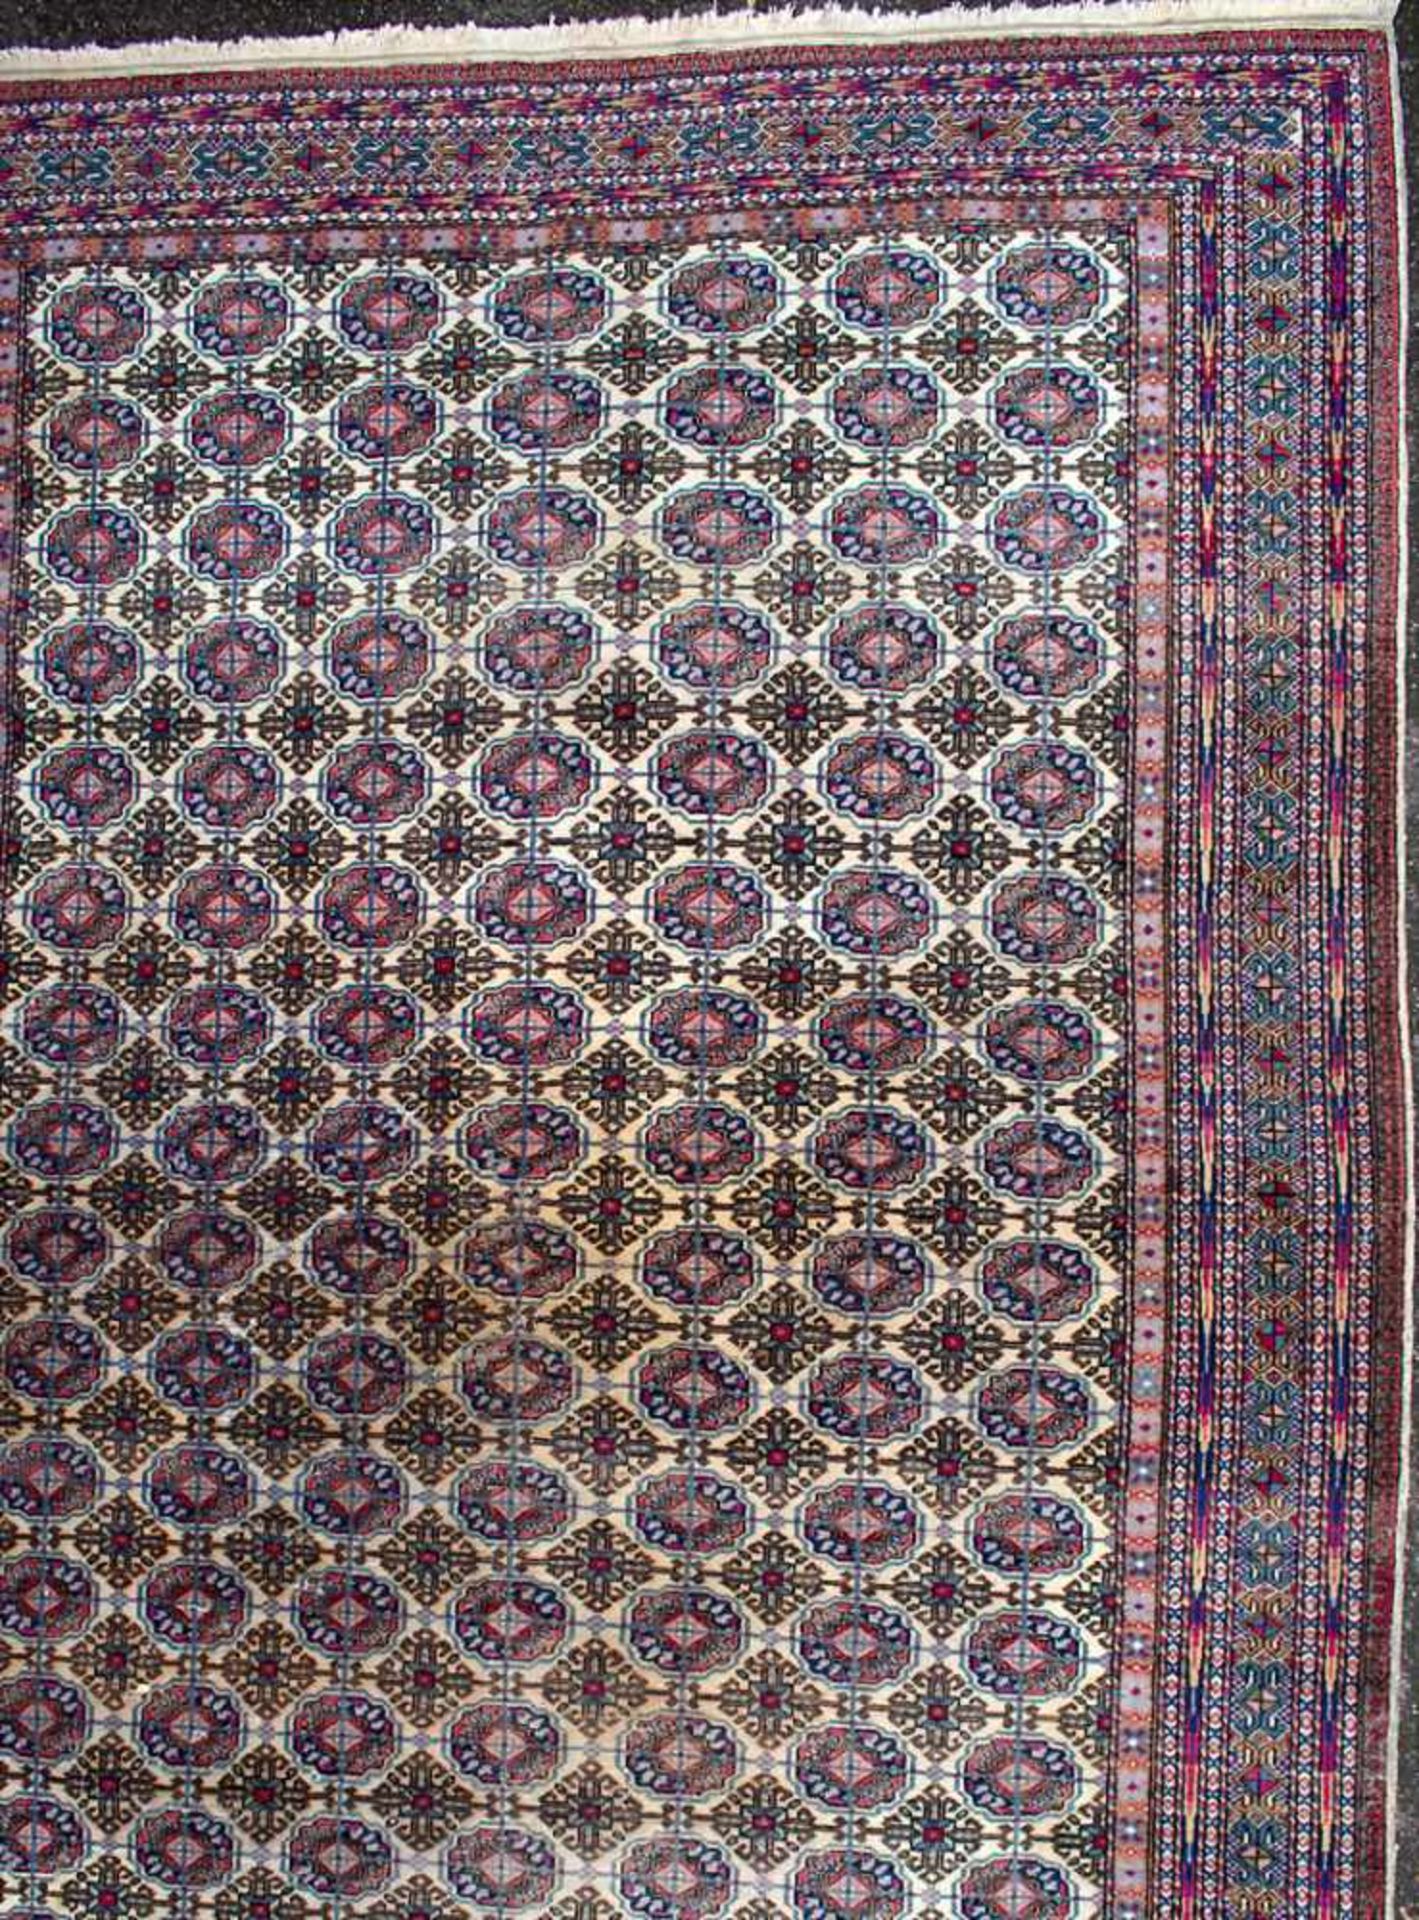 Großer Orientteppich / A large oriental carpetMaterial: Wolle auf Baumwolle, Naturfarben, Maße: